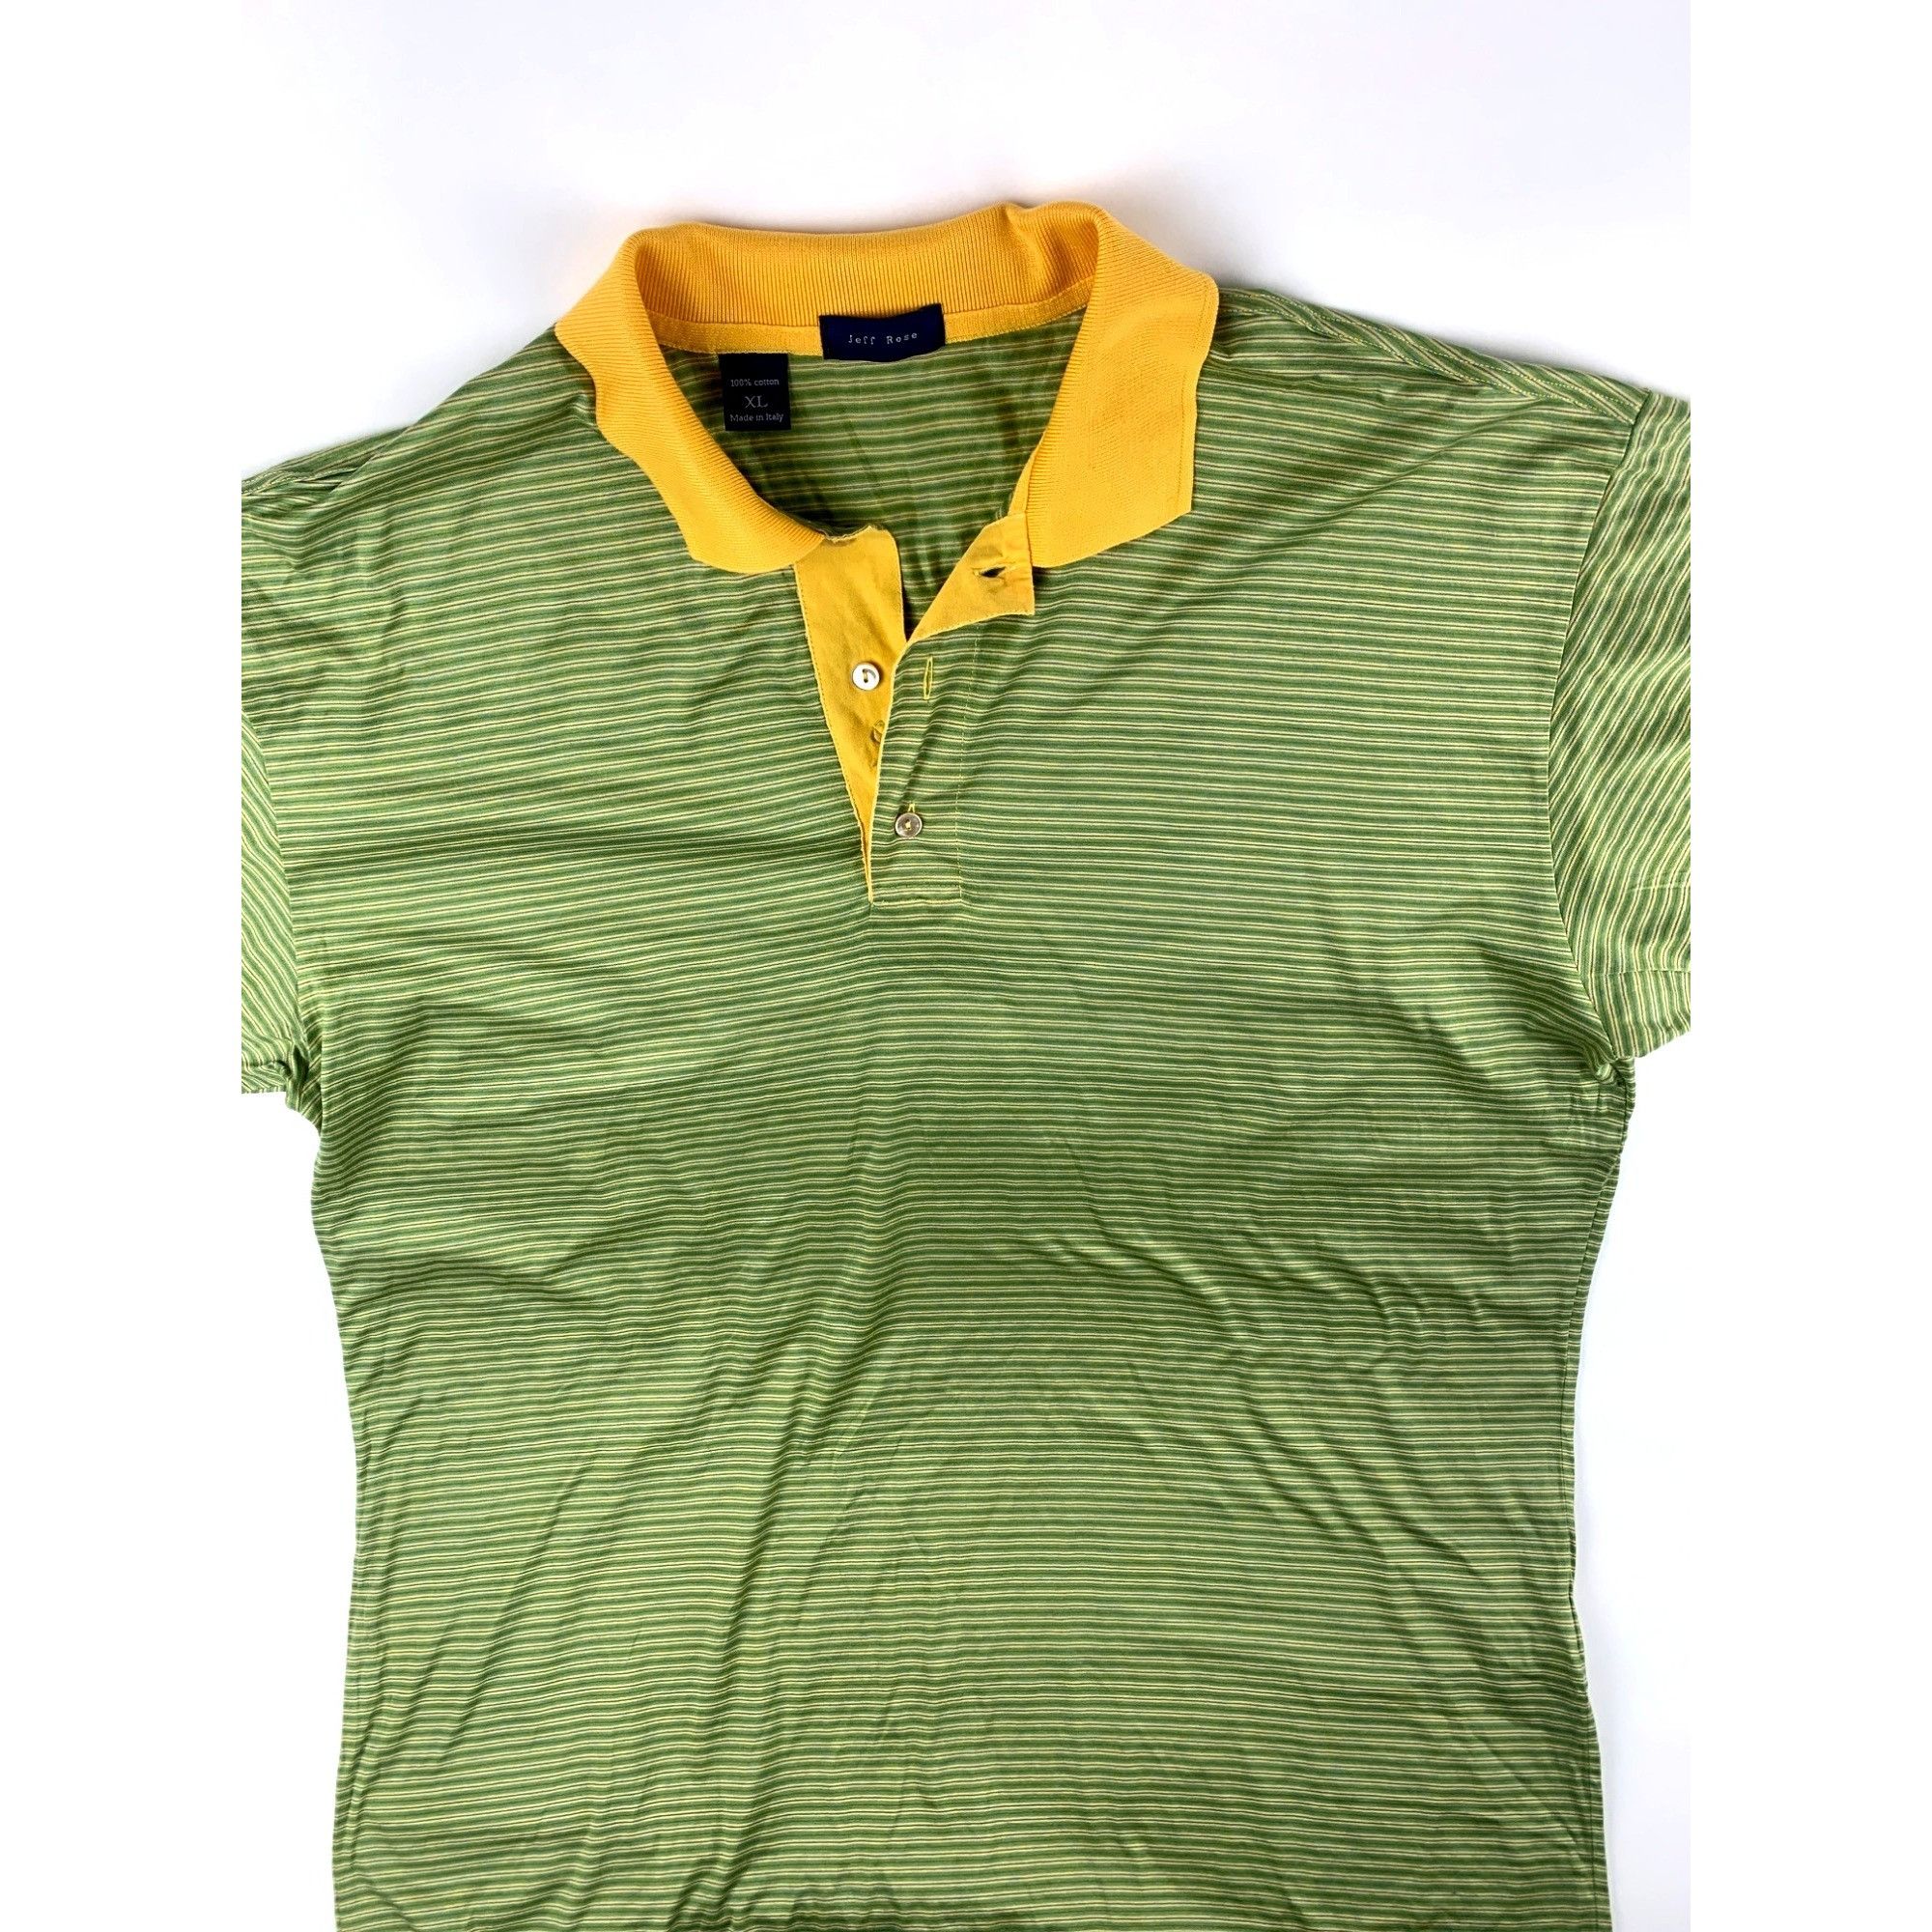 Jeff Rose Jeff Rose Mens Green & Yellow Mercerized Cotton Polo Shirt Size US XL / EU 56 / 4 - 2 Preview